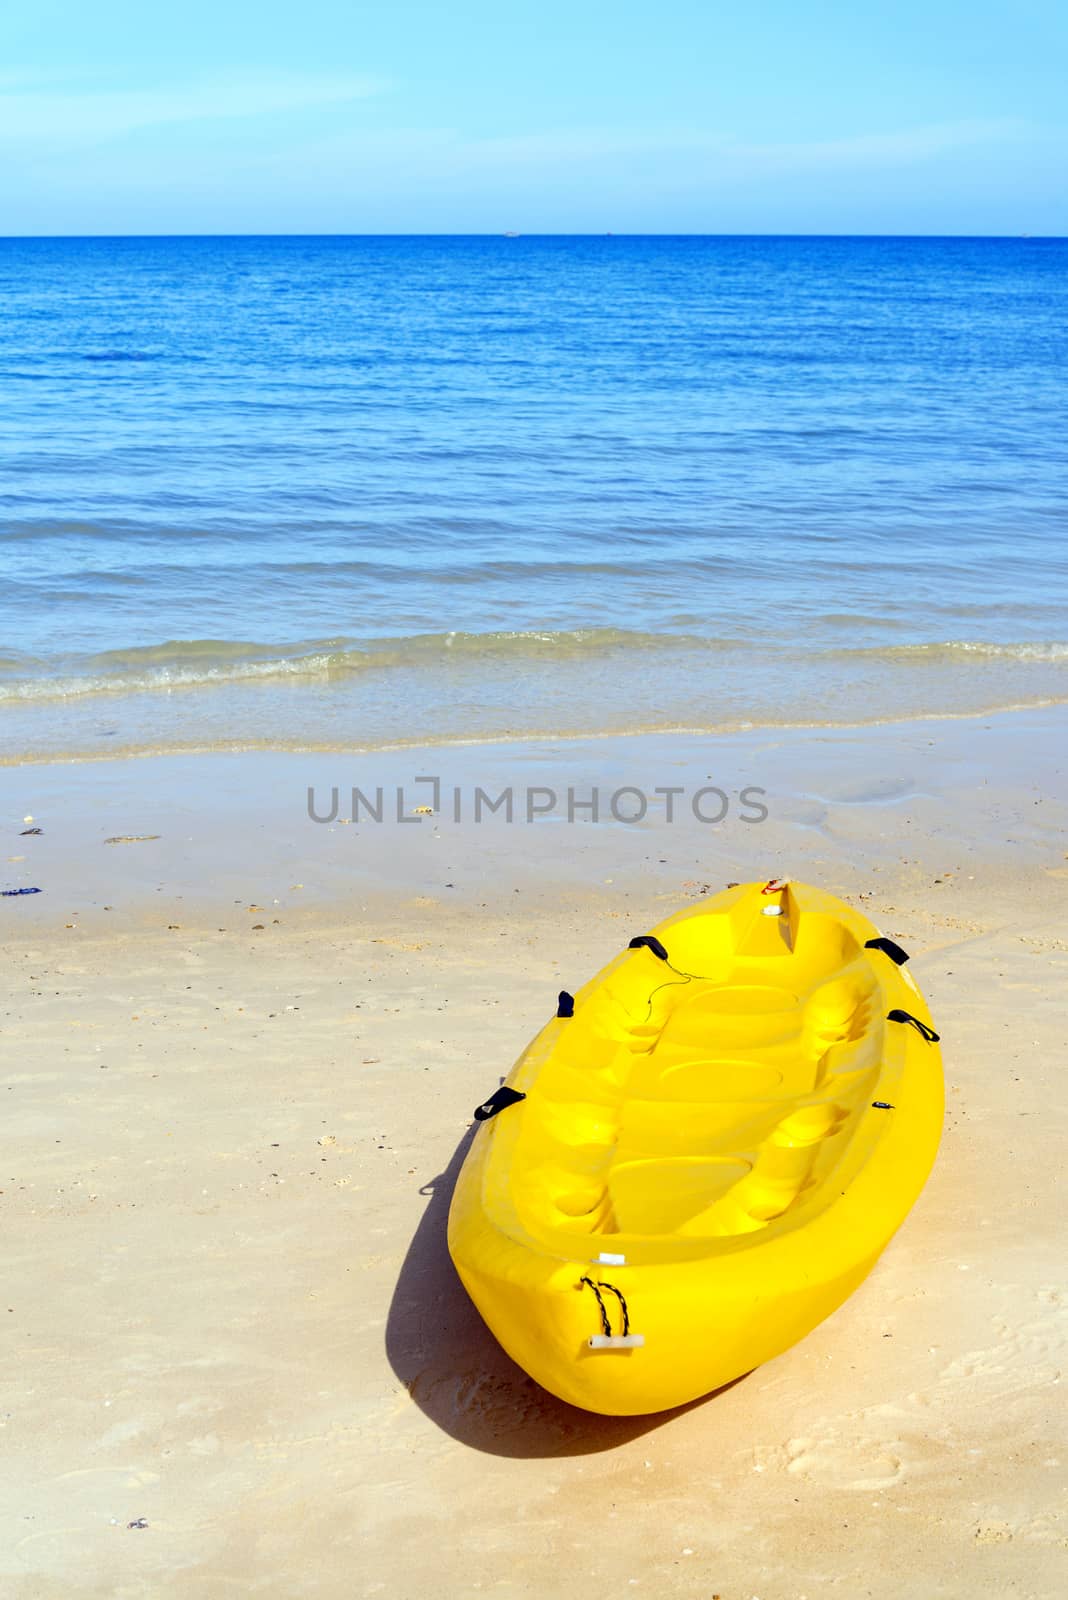 Kayaks on the tropical beach, Mu Koh Samet - Khao Laem Ya Nation by jakgree